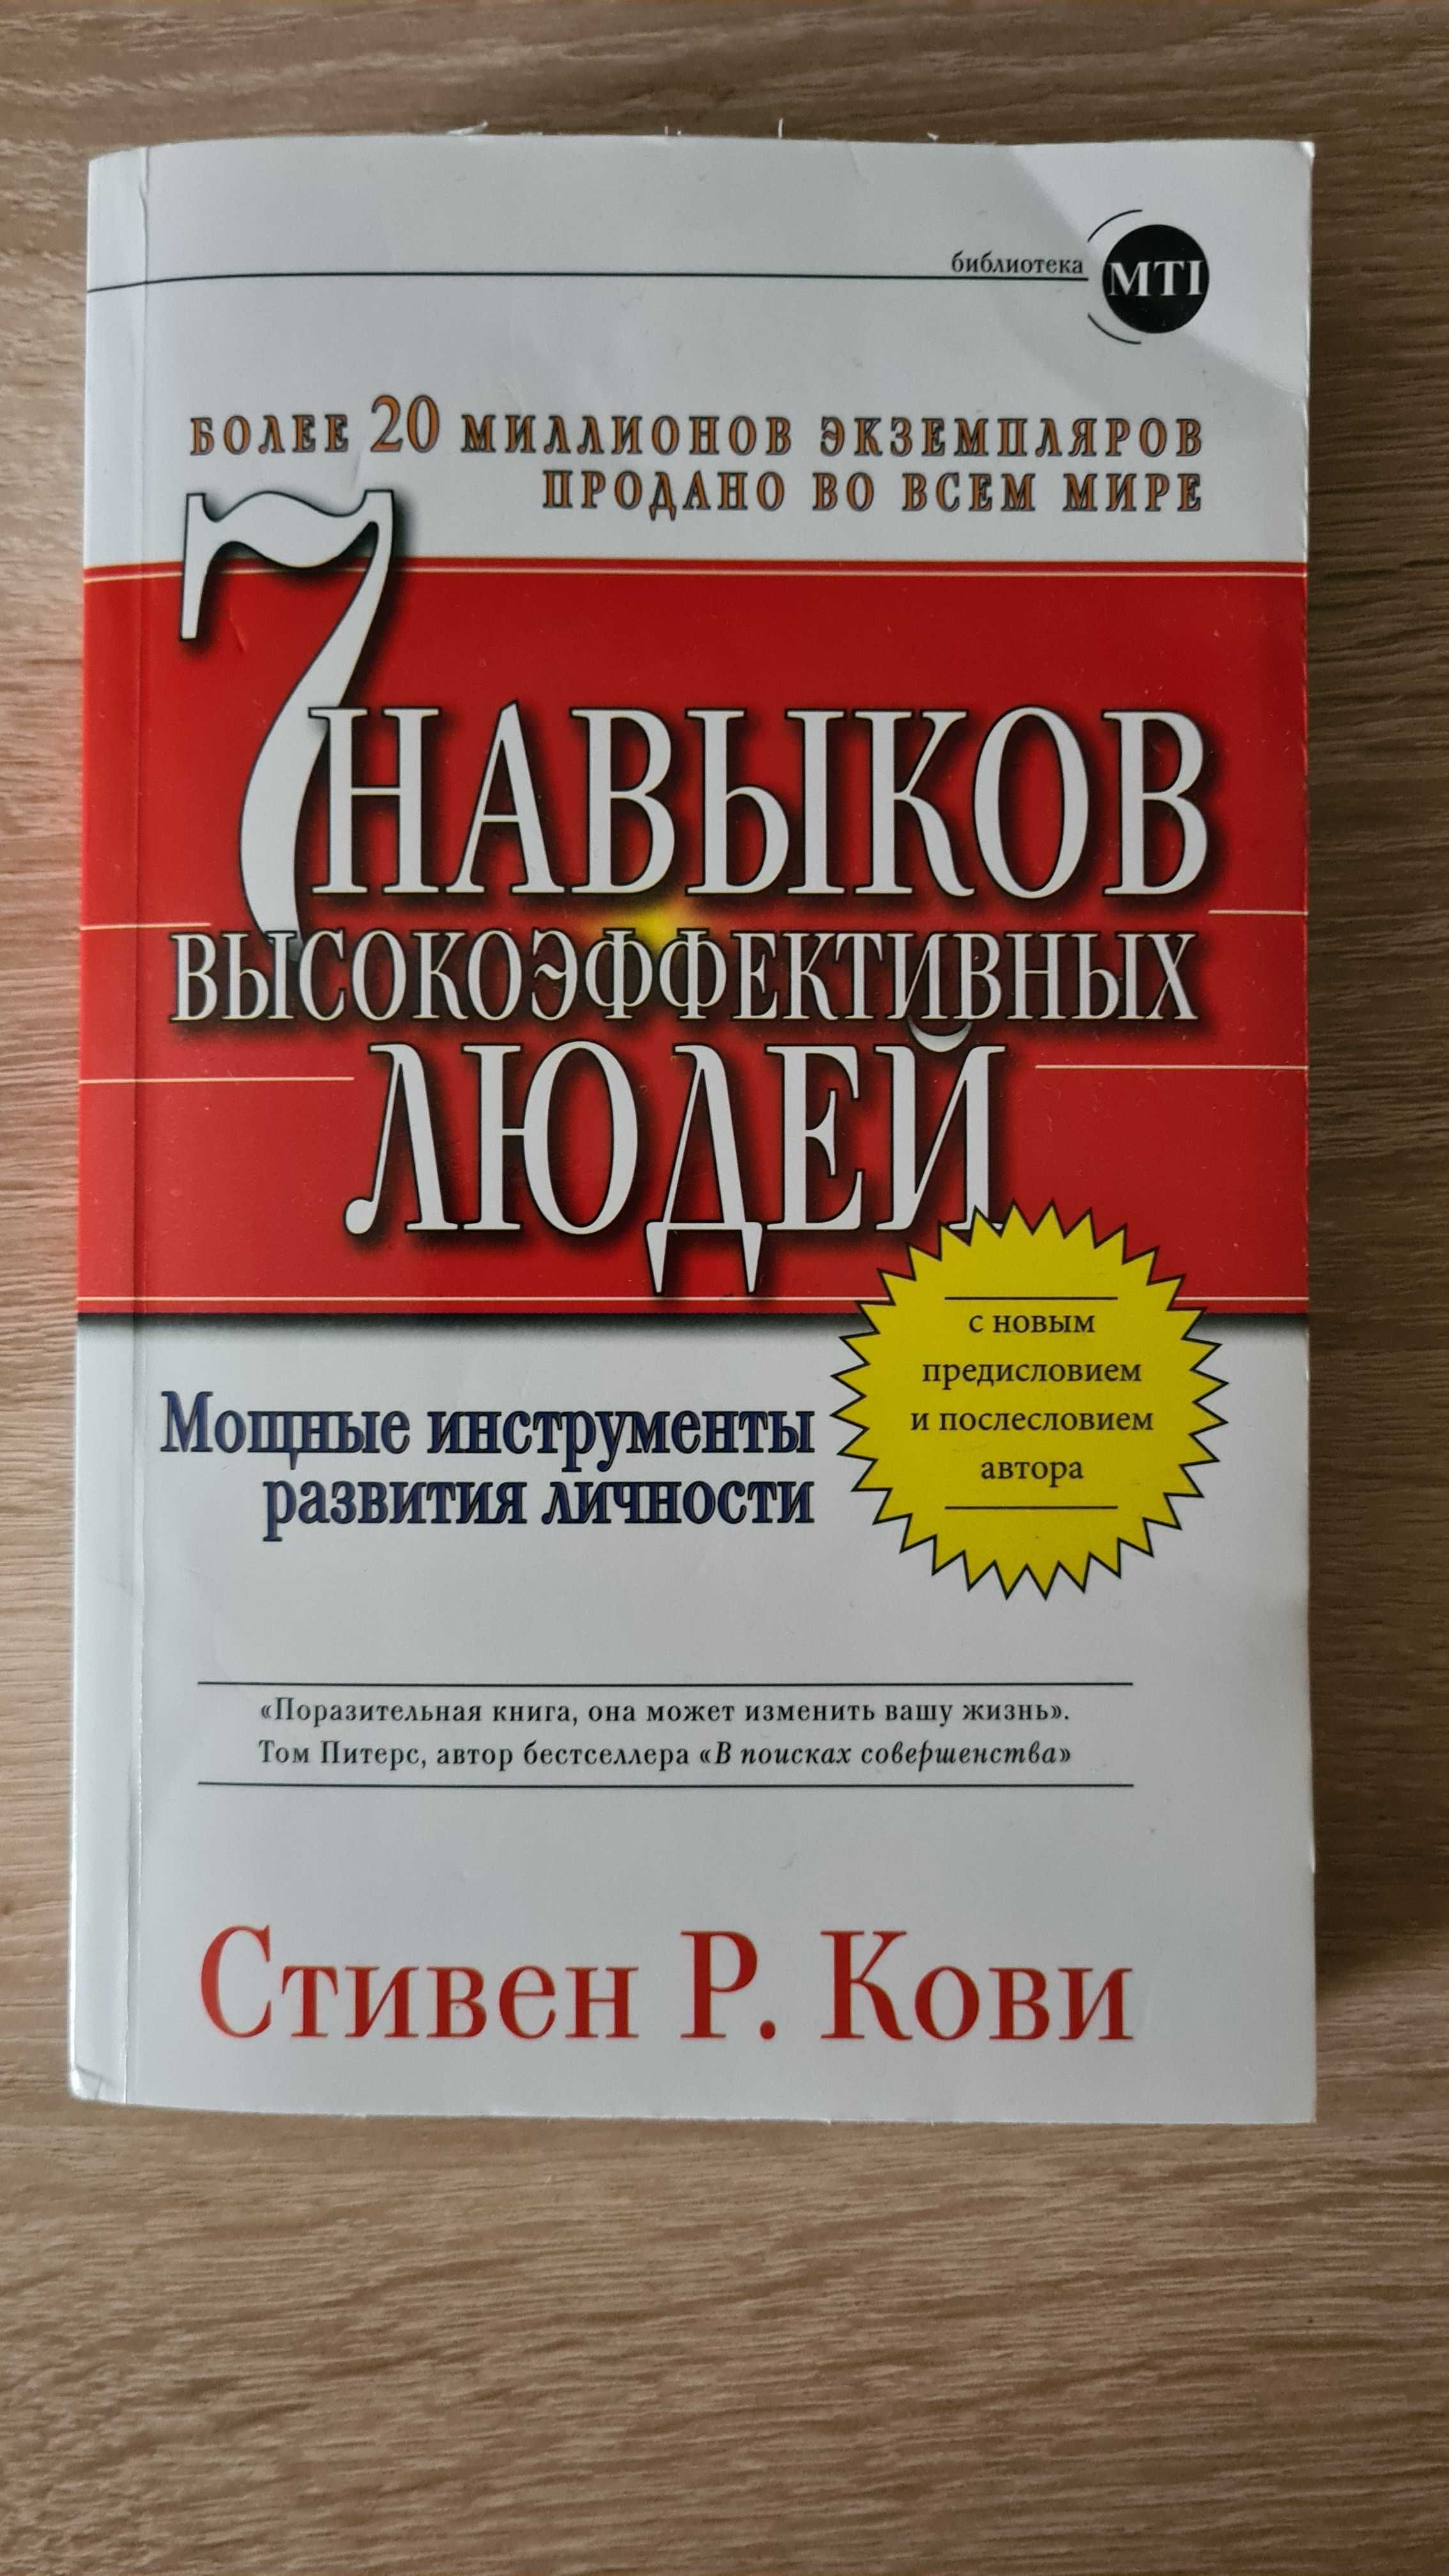 Книга " 7 навыков высокоэффективных людей" Стивен Кови